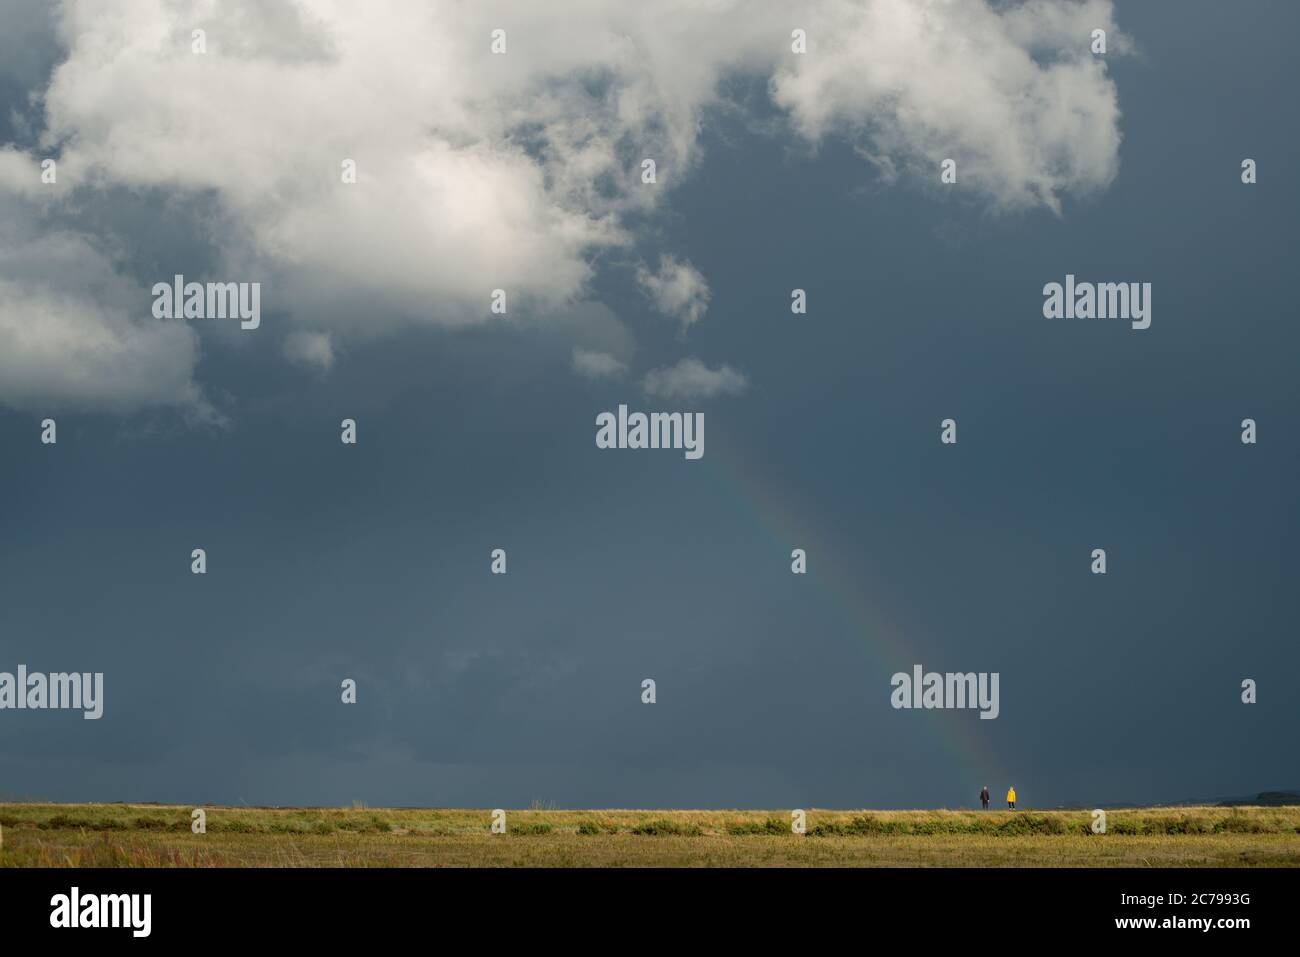 Klassisches Minimalbild des dunklen Himmels mit weißer Wolke und einem Regenbogen, der sich von der Wolke herabbiegend und zwei Personen am Fuß des Regenbogens hervorhebt Stockfoto